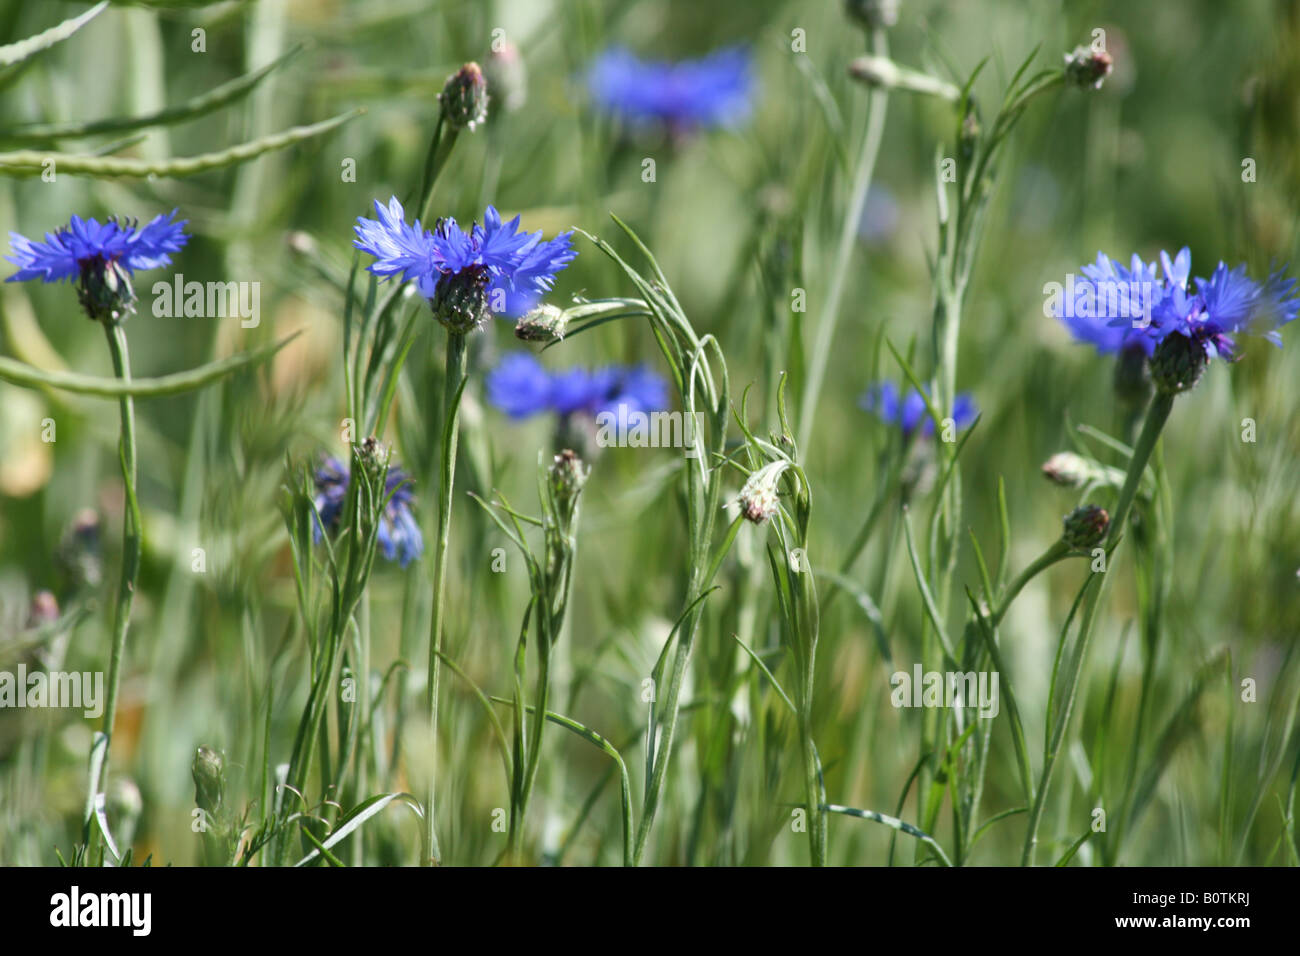 Cornflower or Bachelor's button or Basket flowers in a field - Centaurea cyanus Stock Photo